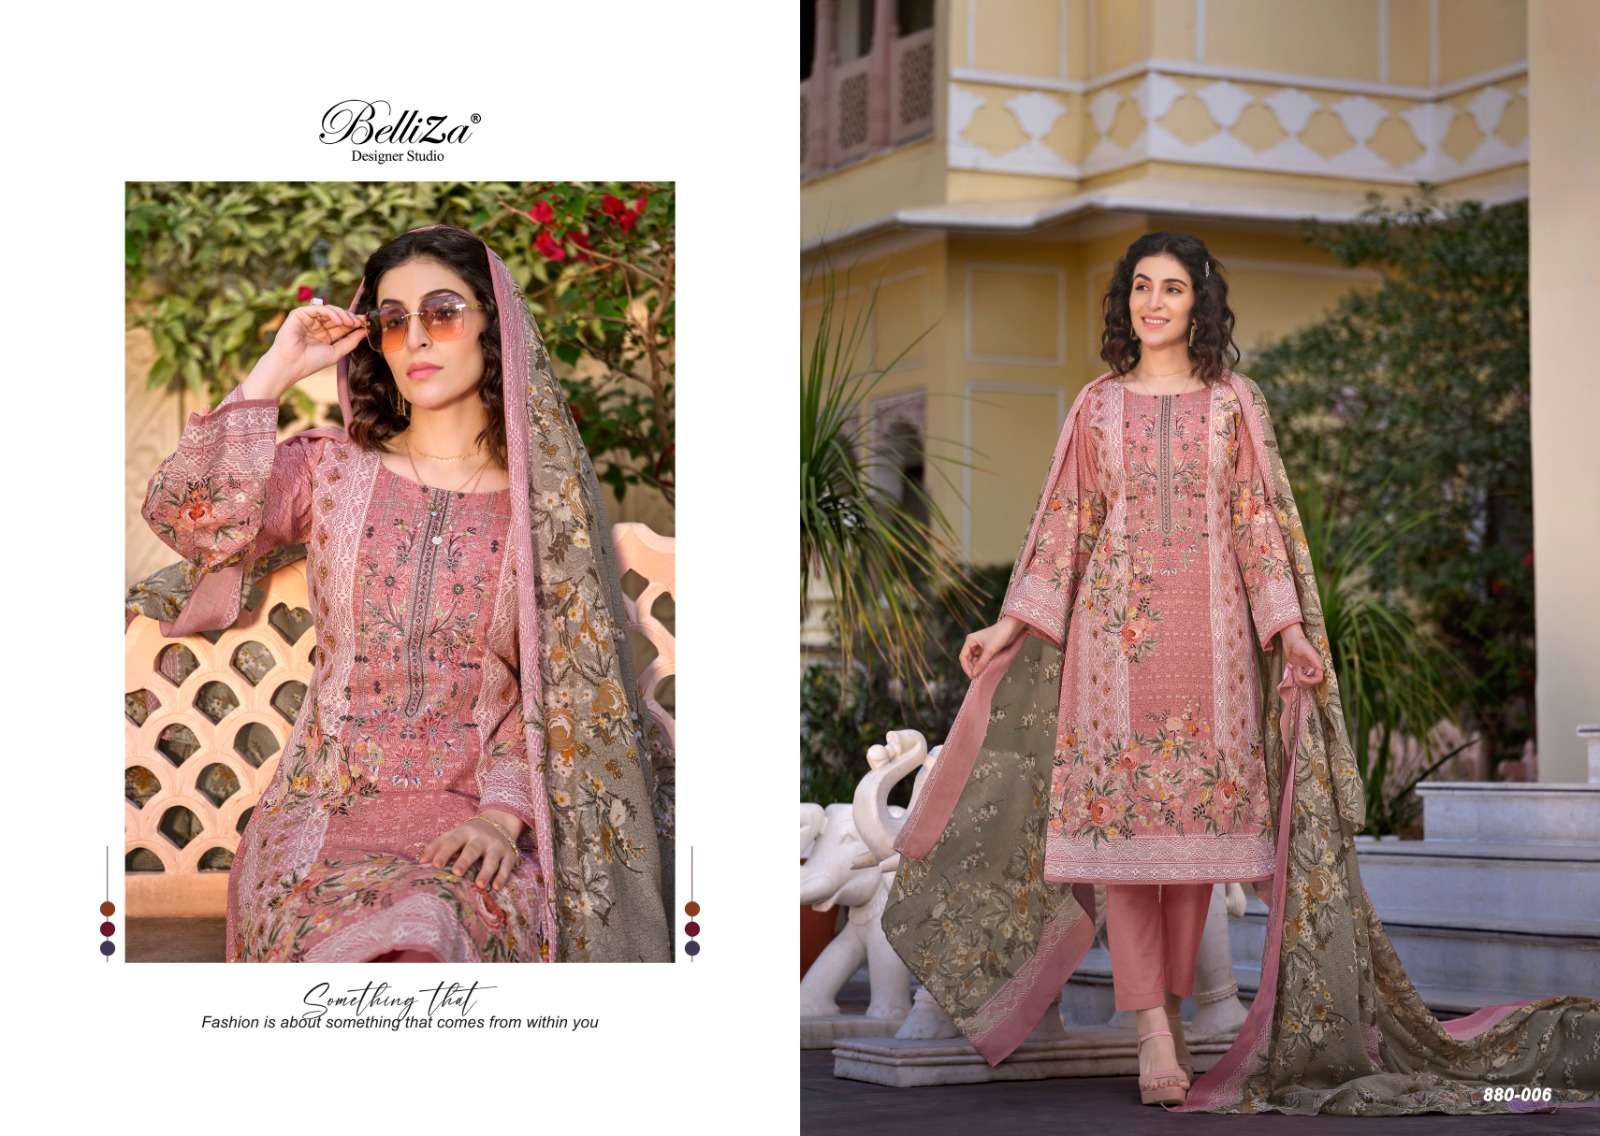 belliza designer studio  naira vol 34 cotton decent look salwar suit catalog